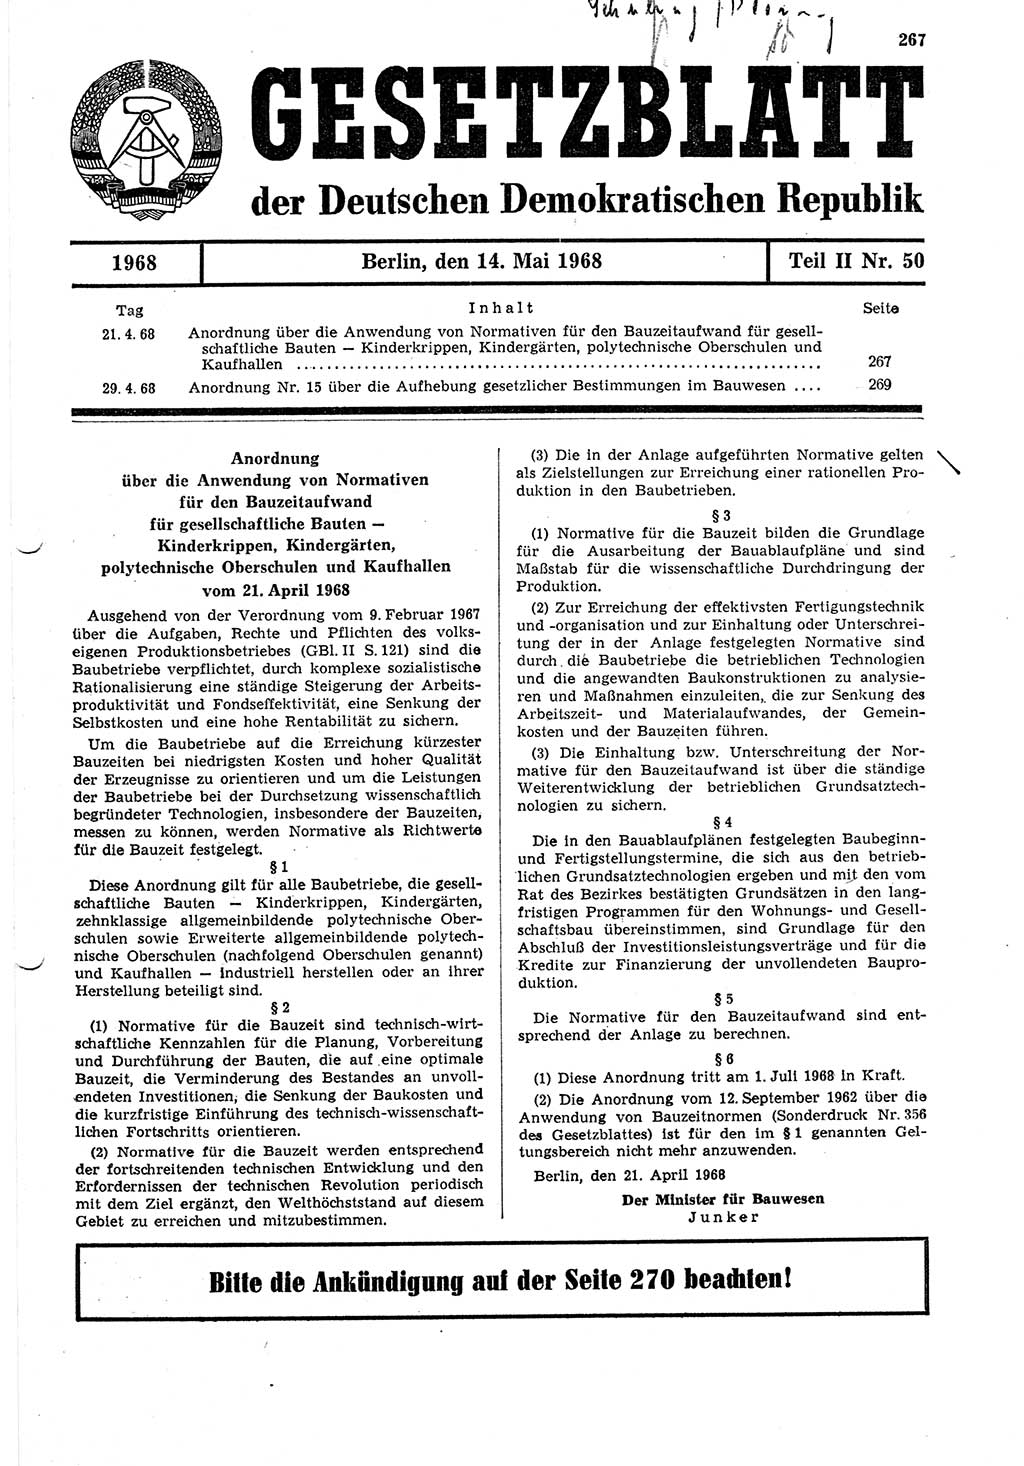 Gesetzblatt (GBl.) der Deutschen Demokratischen Republik (DDR) Teil ⅠⅠ 1968, Seite 267 (GBl. DDR ⅠⅠ 1968, S. 267)